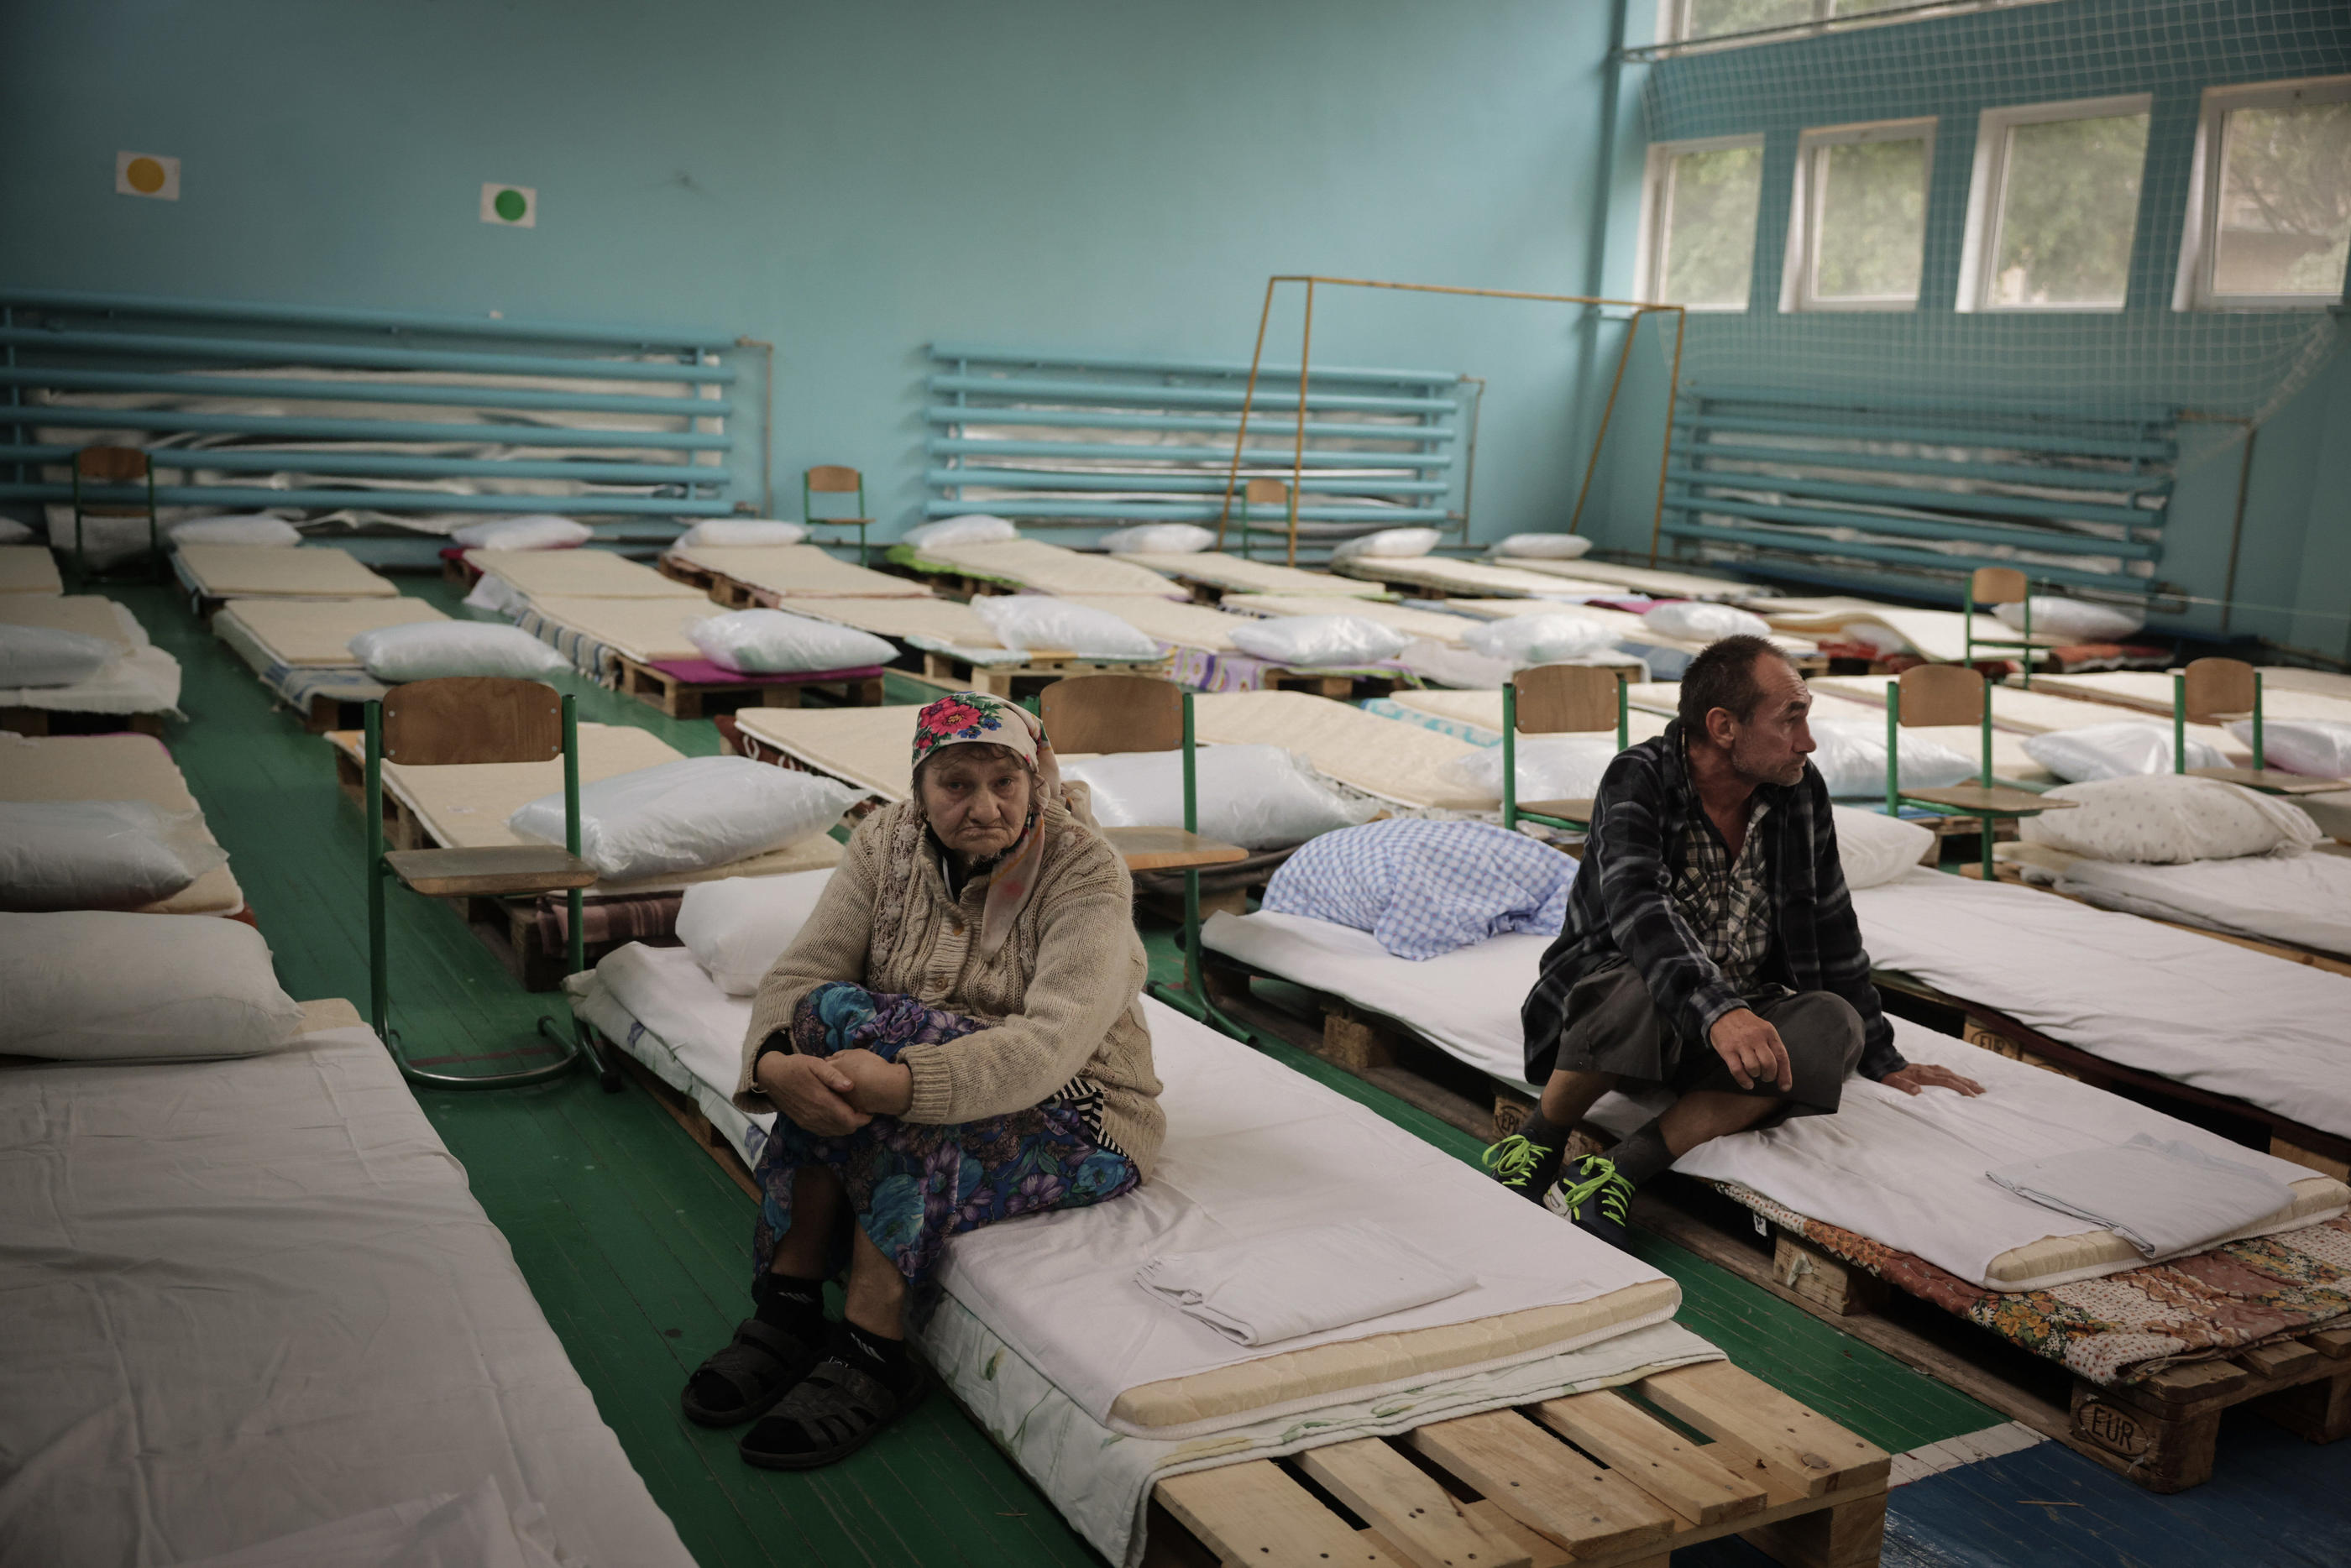 À Kryvyy Rih(Ukraine), le 30 juin, dans une école transformée en centre pour les réfugiés, des habitants des zones occupées par les Russes arrivent après avoir fui la région de Kherson. LP/Philippe de Poulpiquet